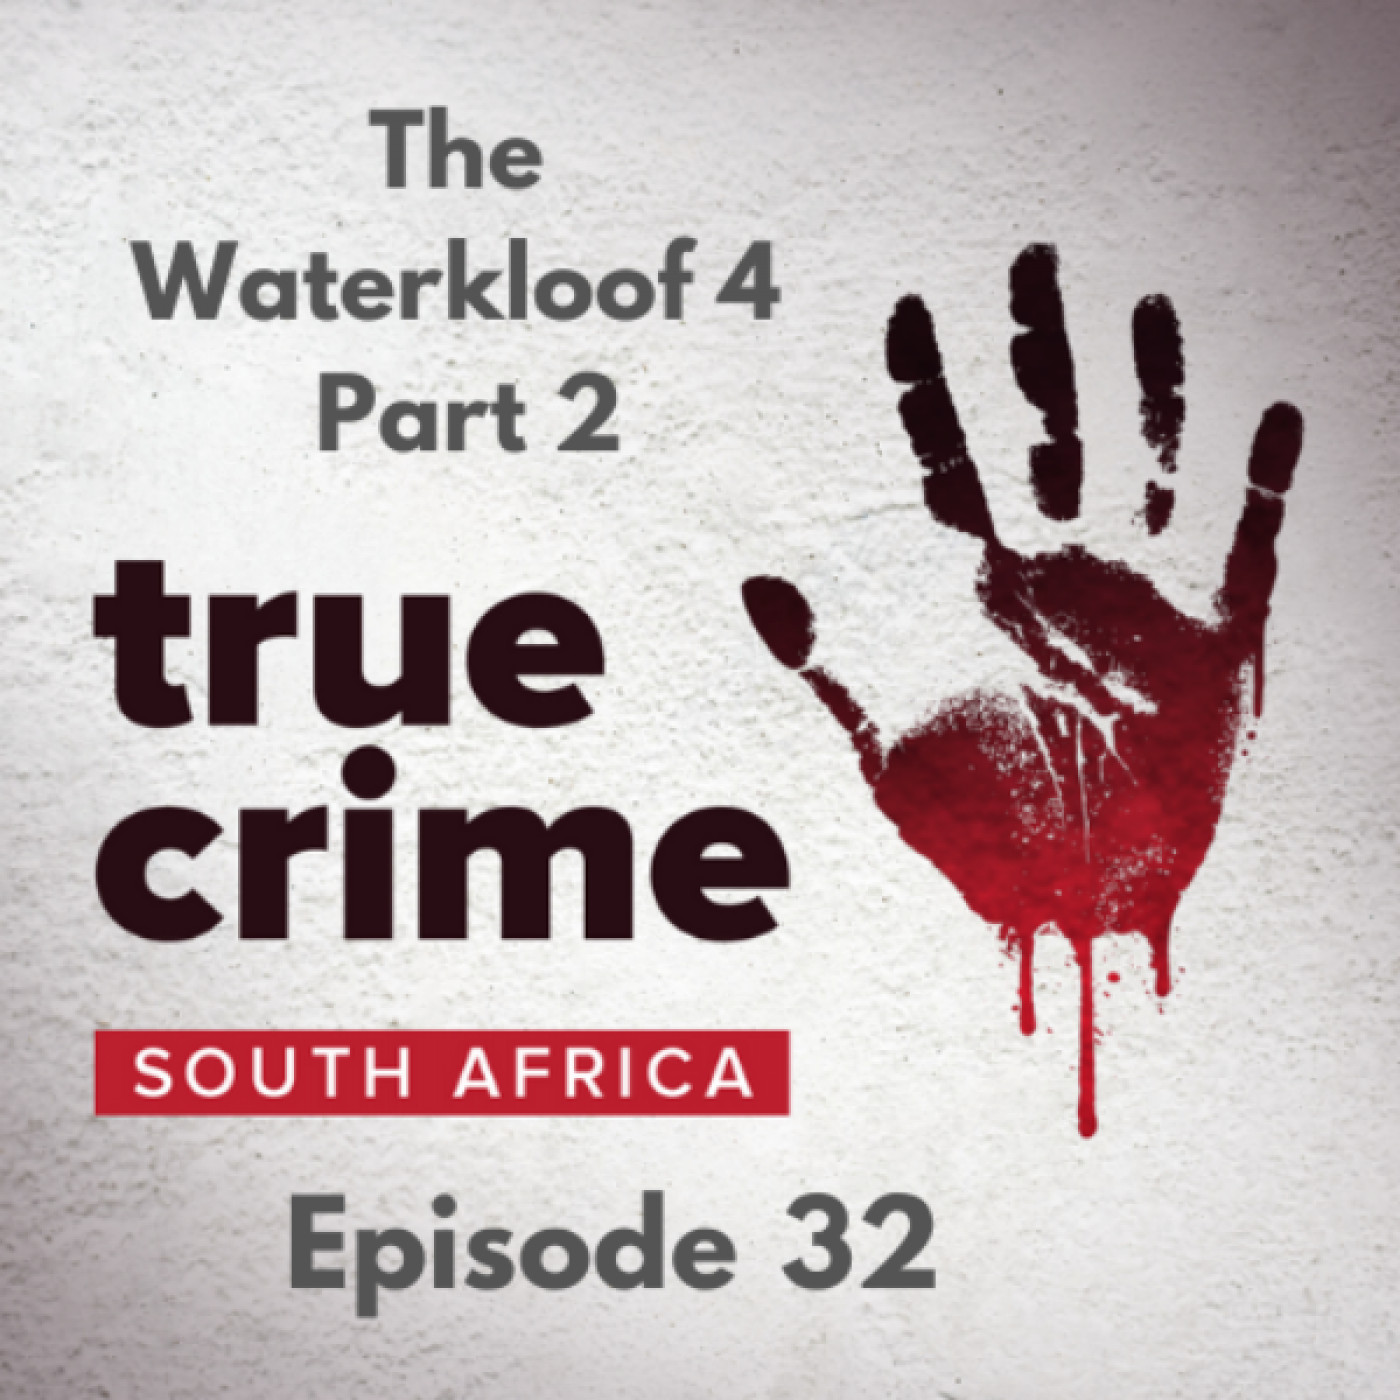 Episode 32 - The Waterkloof 4 (Part 2)